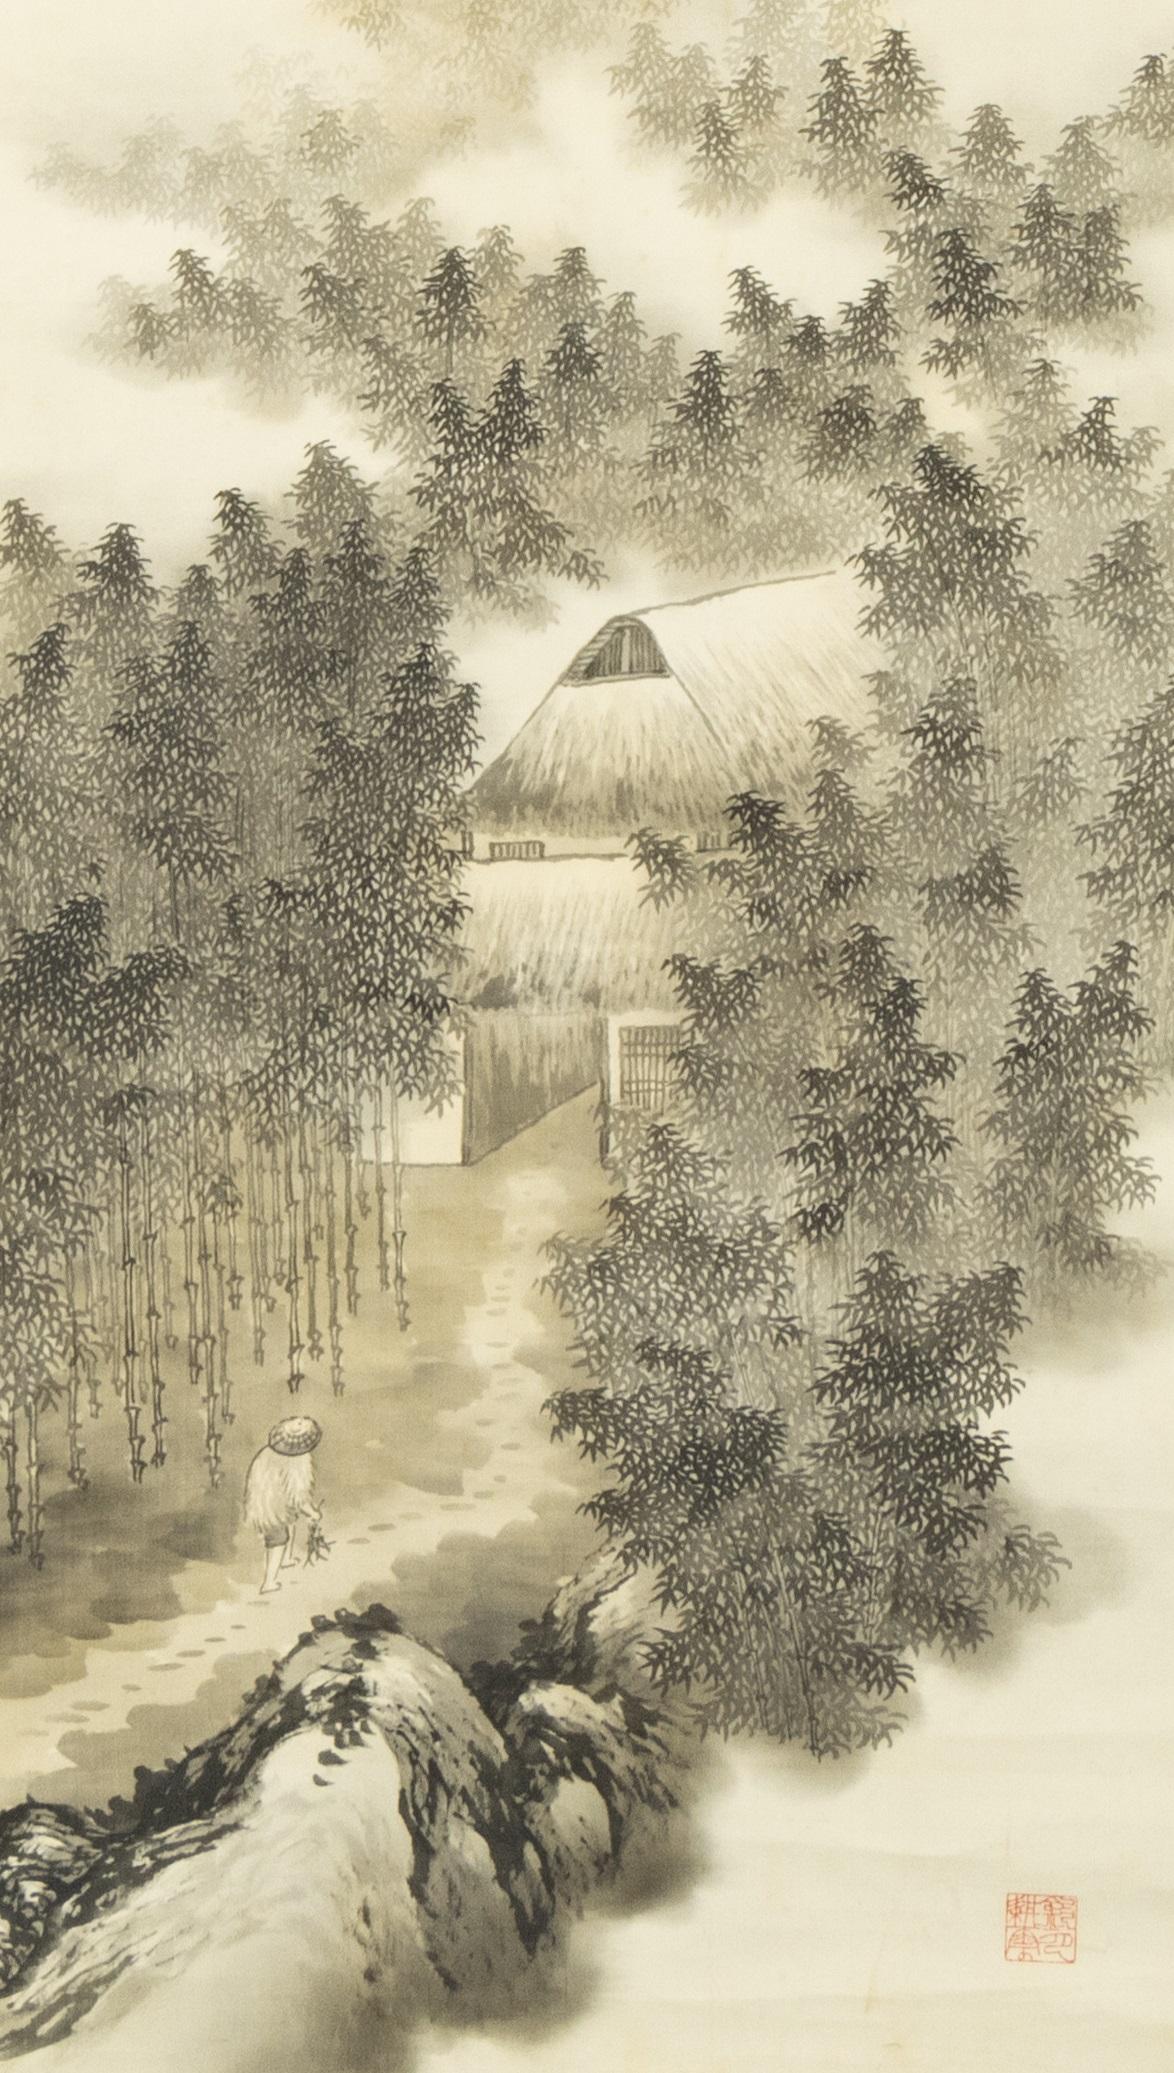 École japonaise Boerderij in bamboebos in maanlicht
Rolschildering / scroll op zijde, benen rollers. B 140,4 x 42 / 198,5 x 54,5 cm
140,4 x 42 / 198,5 x 54,5 cm